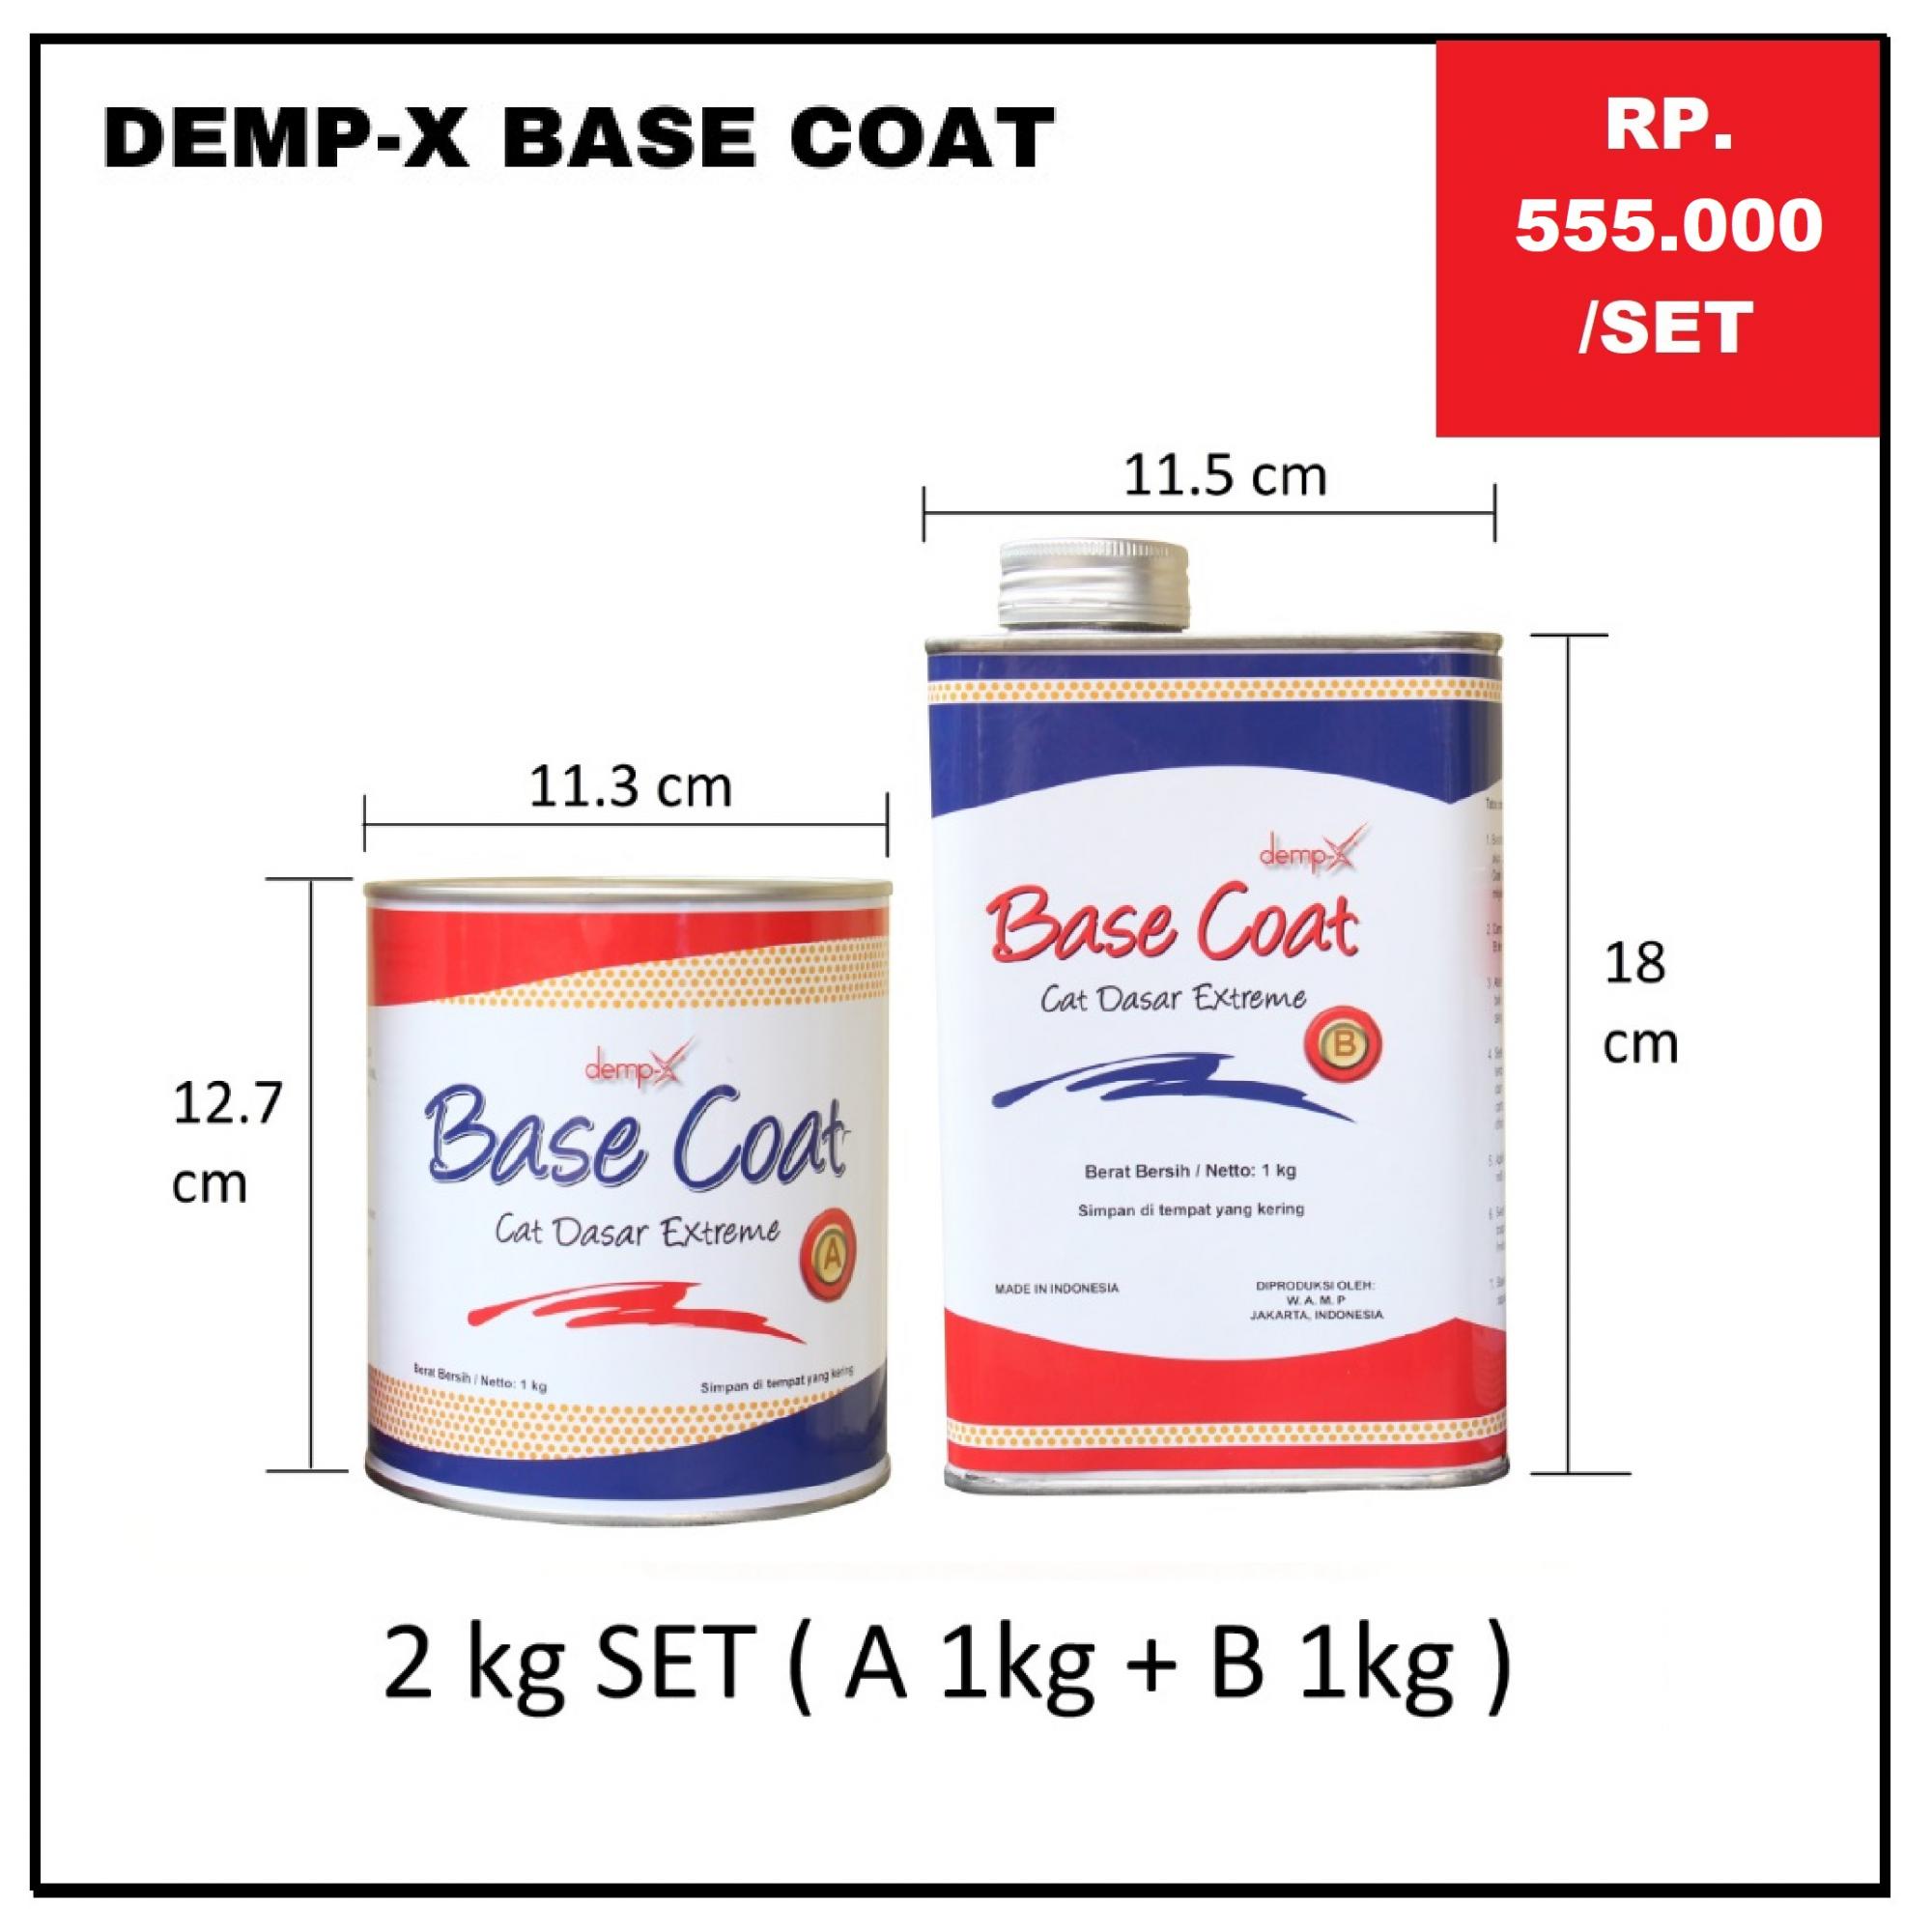 Kemasan dan Harga DEMP-X Base Coat 2kg SET